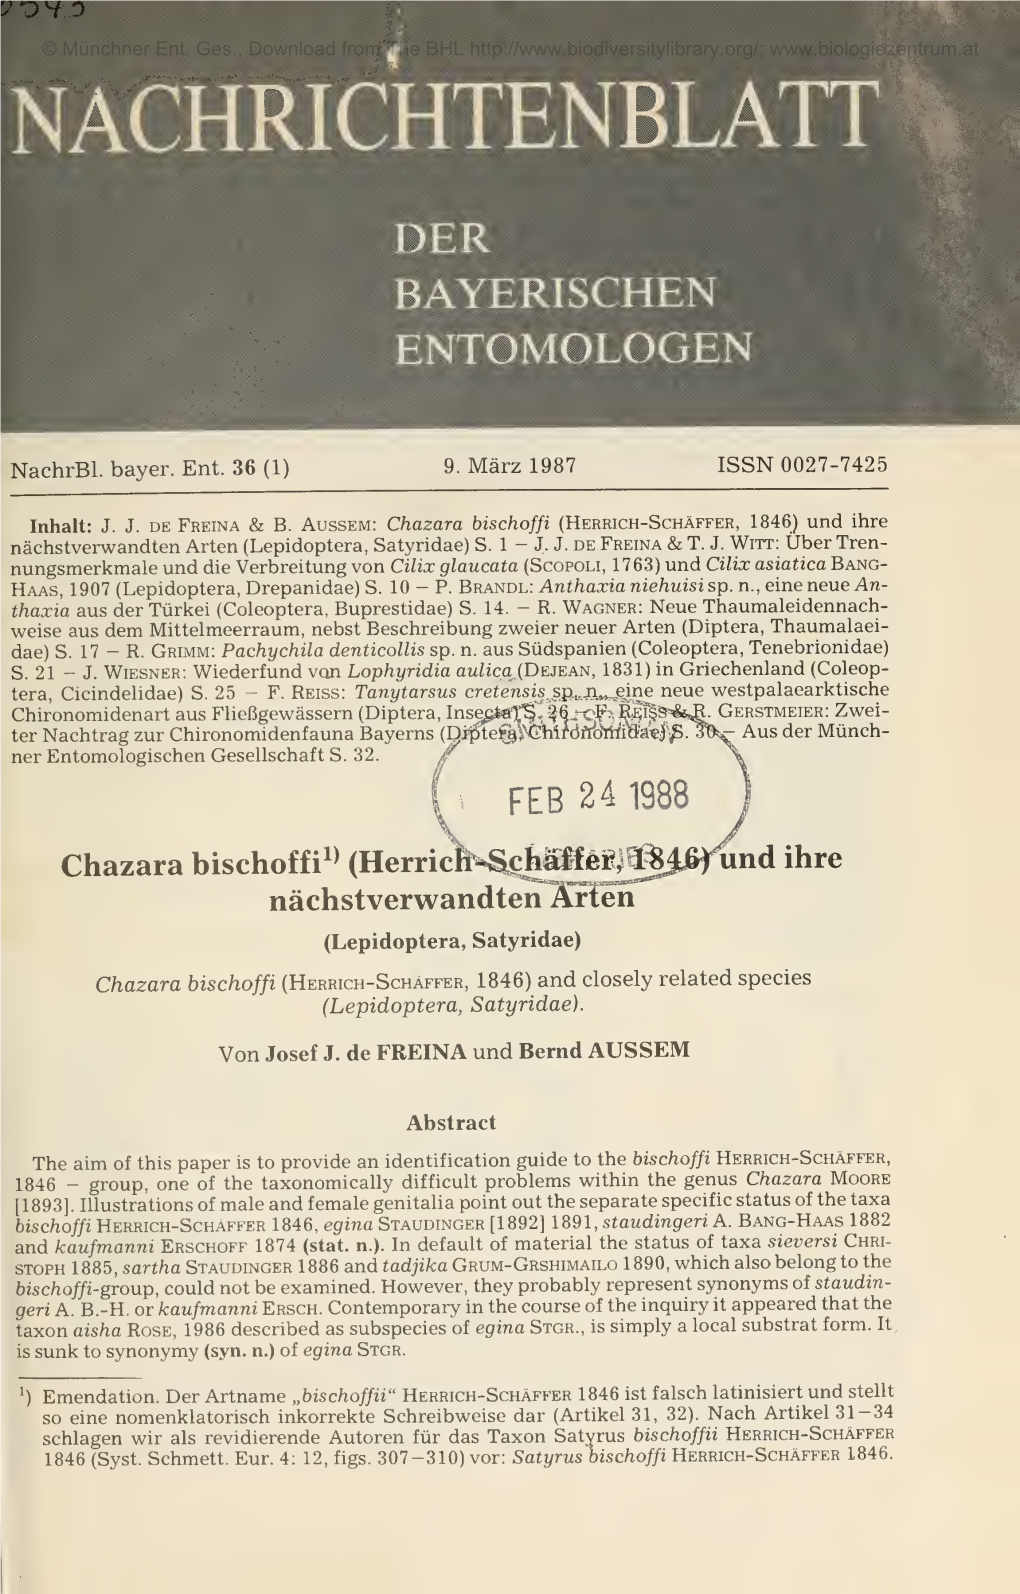 Chazara Bischoffi (Herrich-Schäffer, 1846) Und Ihre Nächstverwandten Arten (Lepidoptera, Satyridae) S